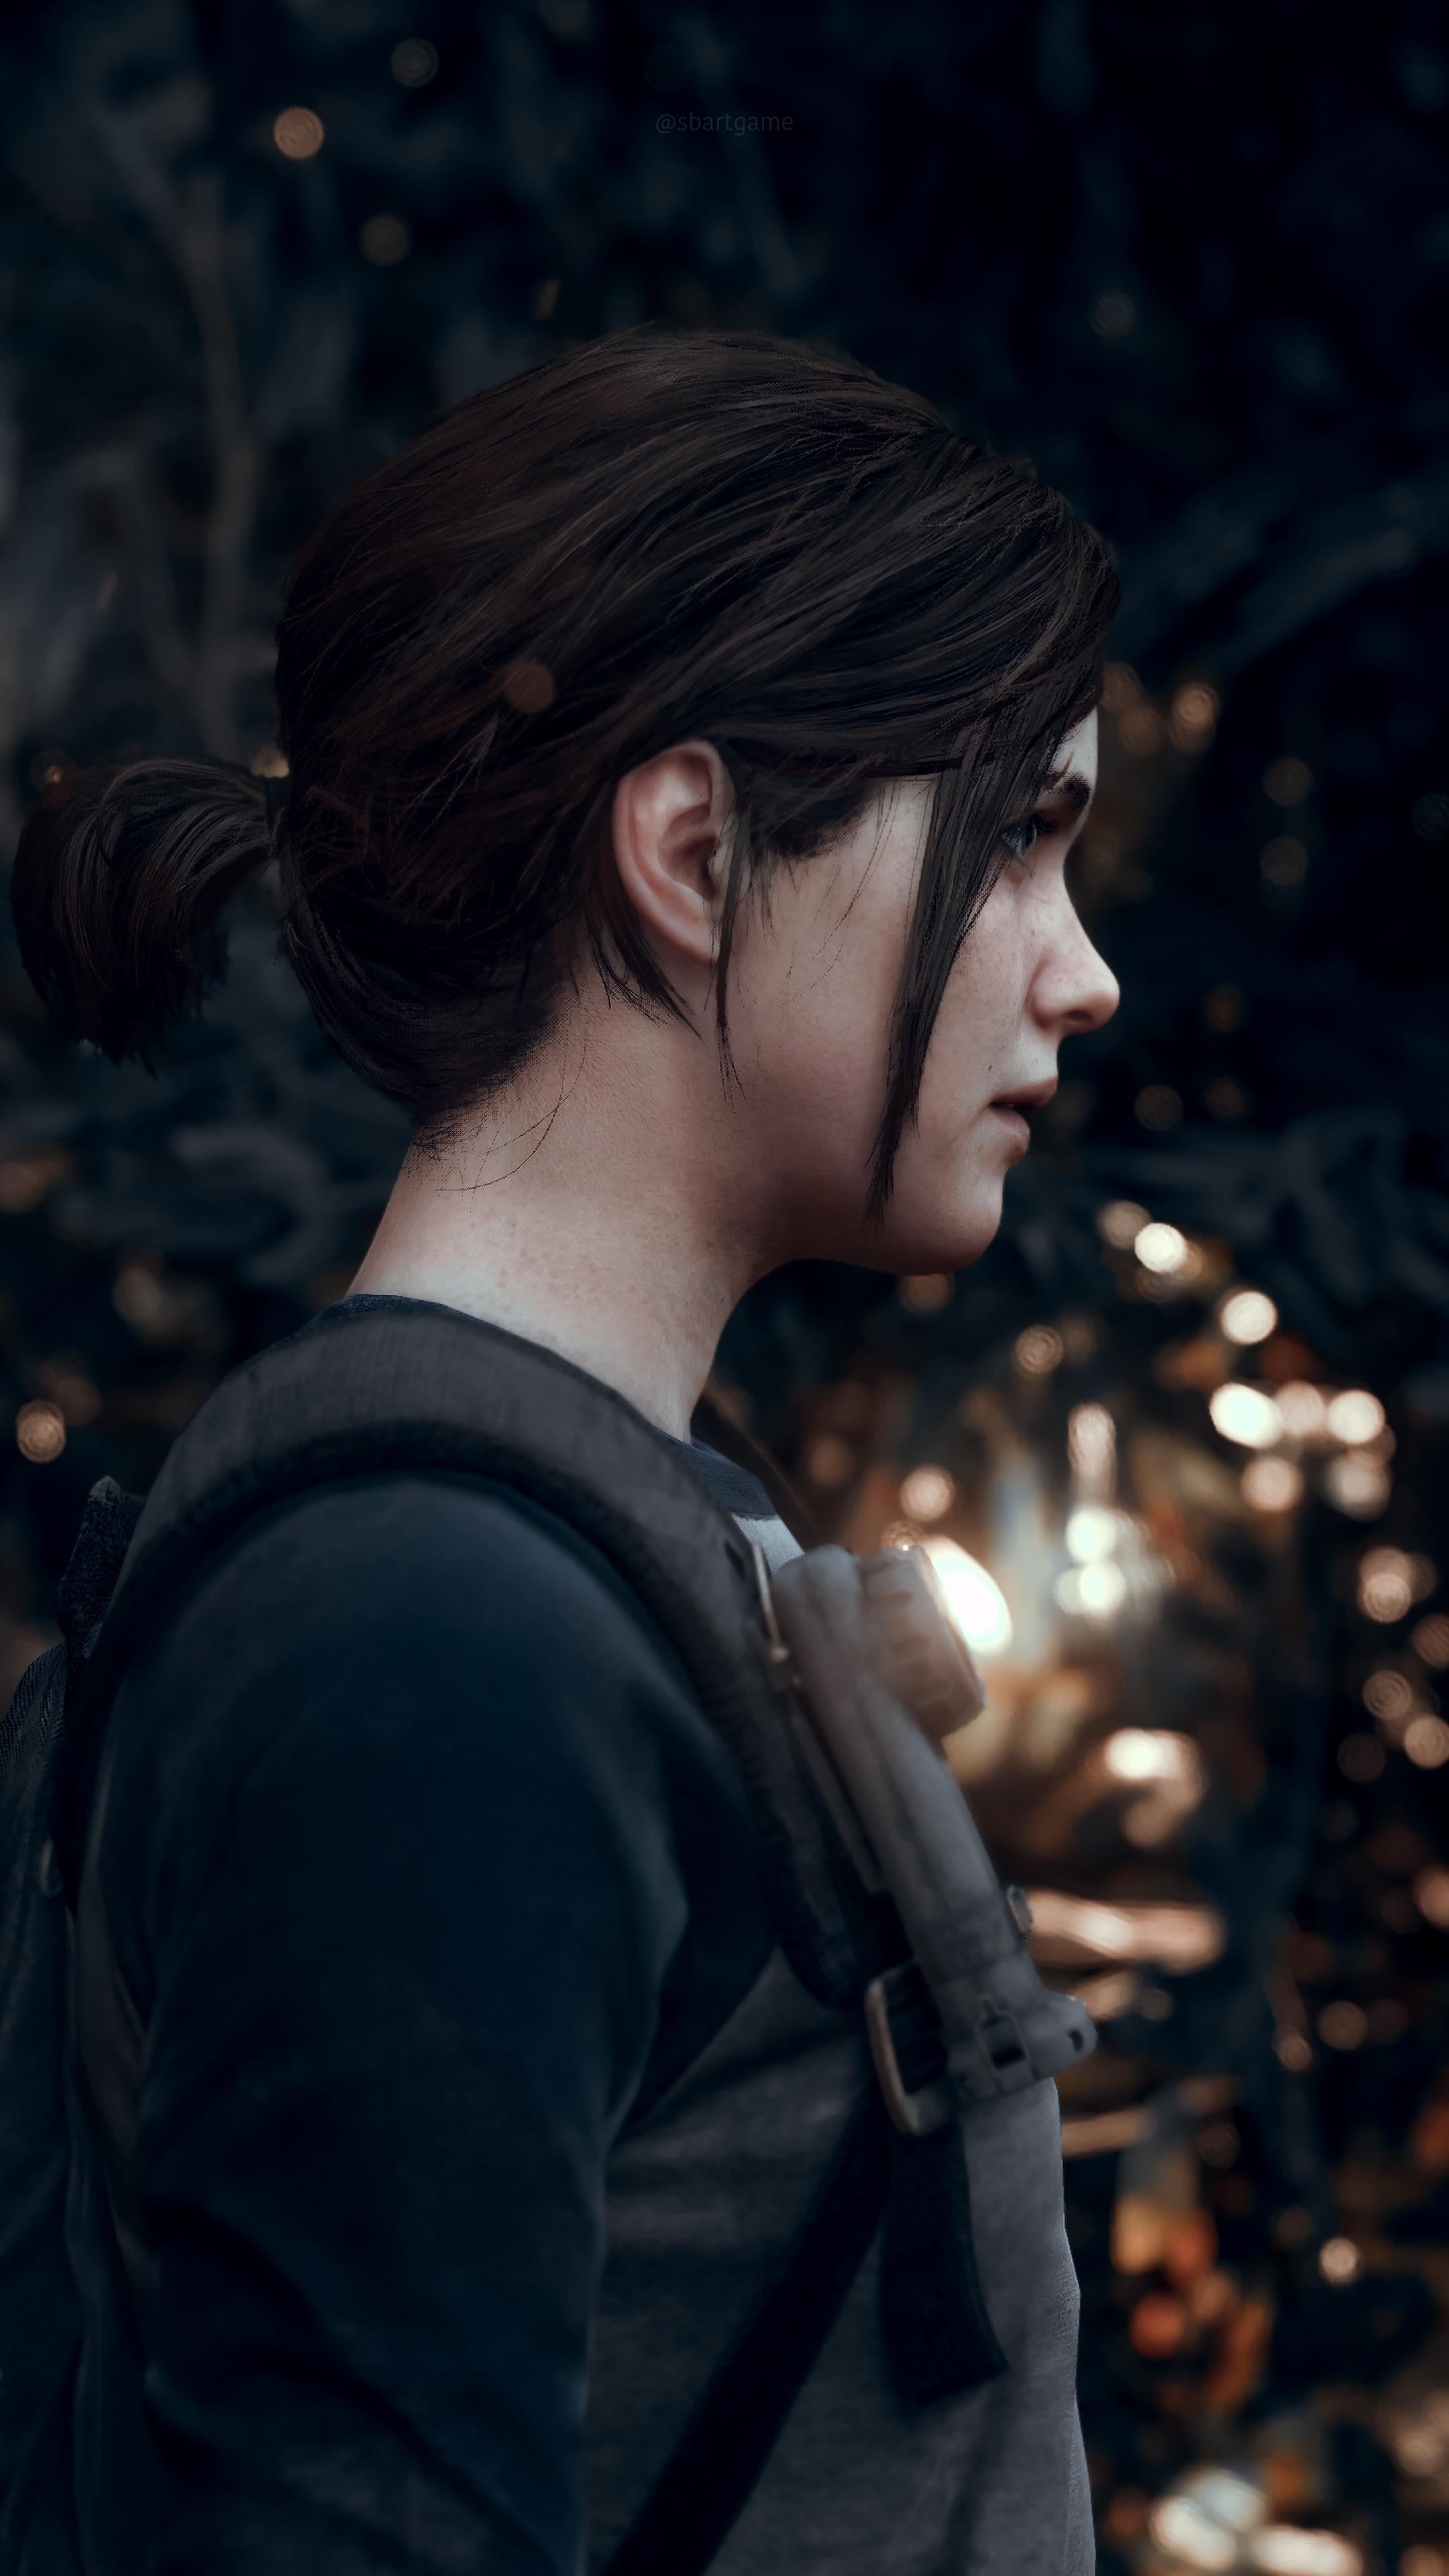 Ellie Williams, PlayStation 4, The Last of Us 2